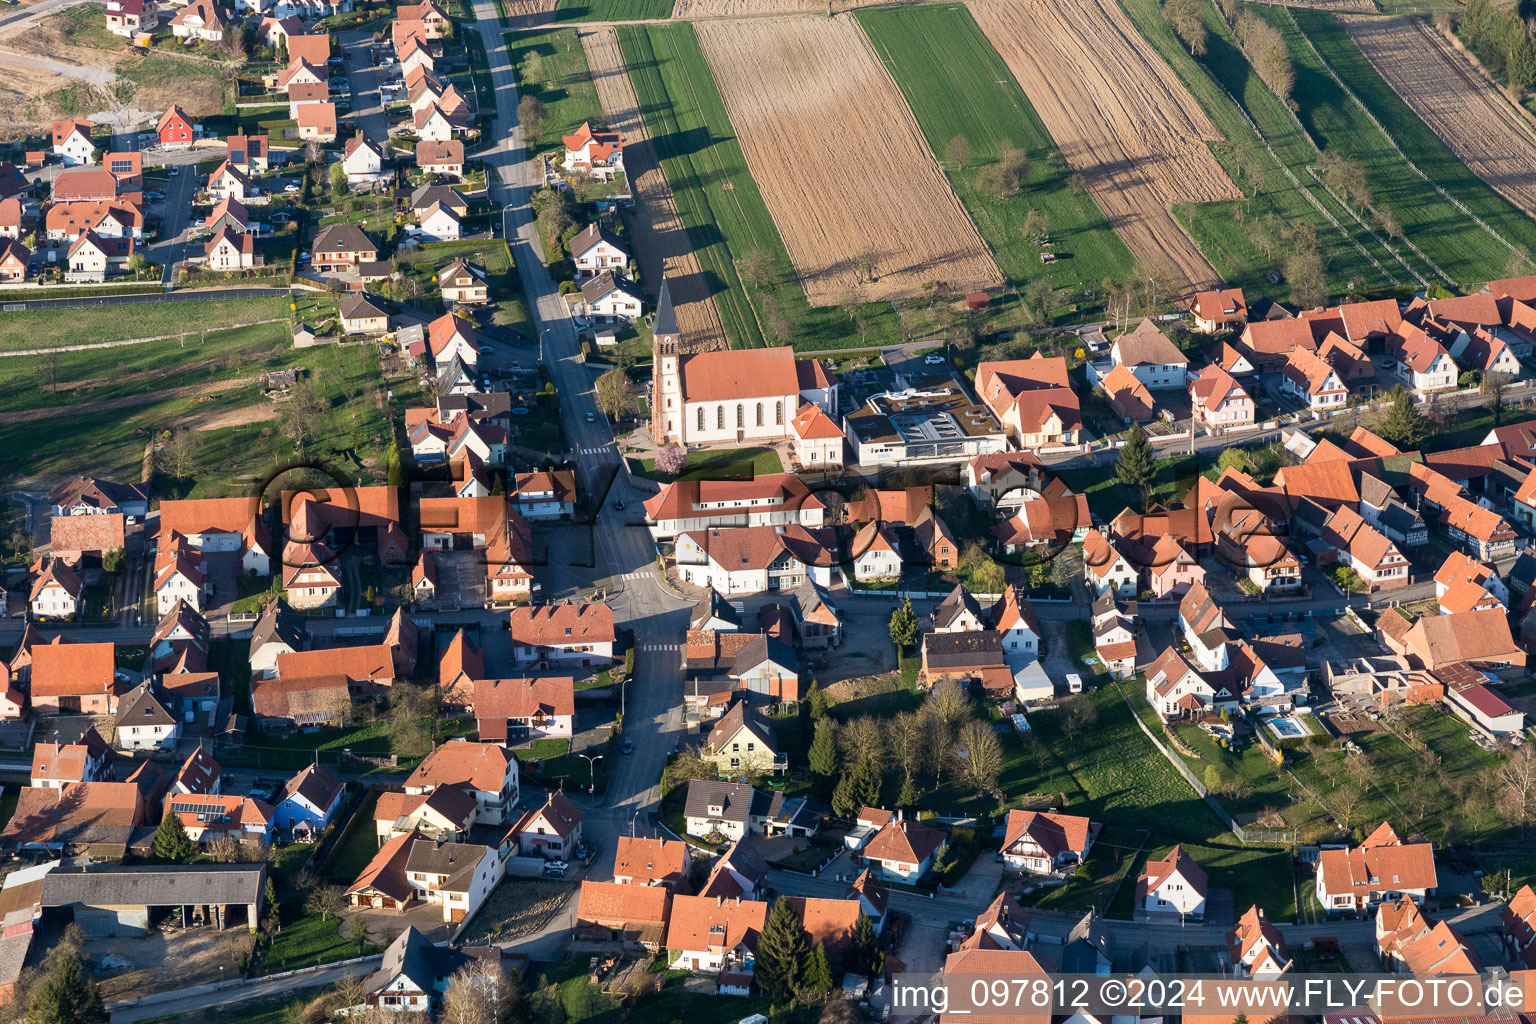 Vue aérienne de Bâtiment d'église au centre du village à Aschbach dans le département Bas Rhin, France